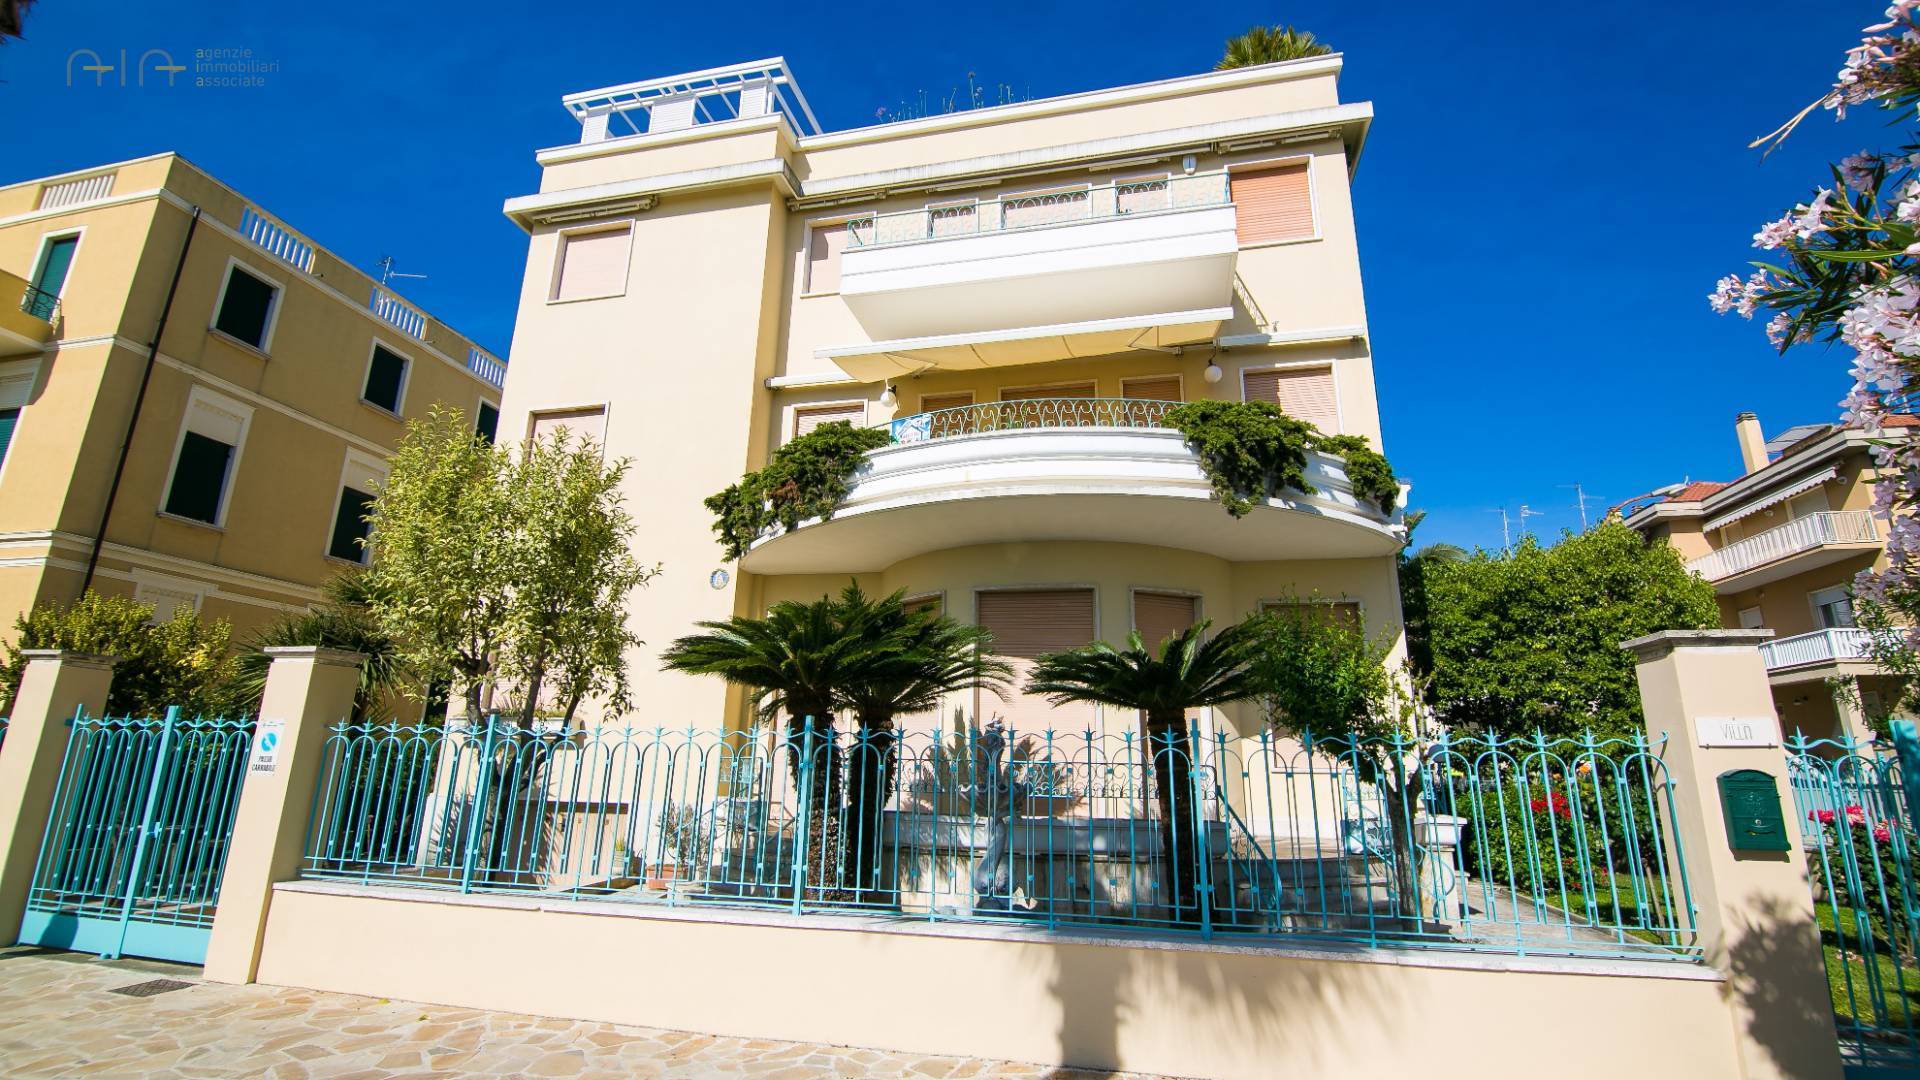 Appartamento in vendita a San Benedetto del Tronto, 8 locali, zona Località: Centralissima, Trattative riservate | PortaleAgenzieImmobiliari.it